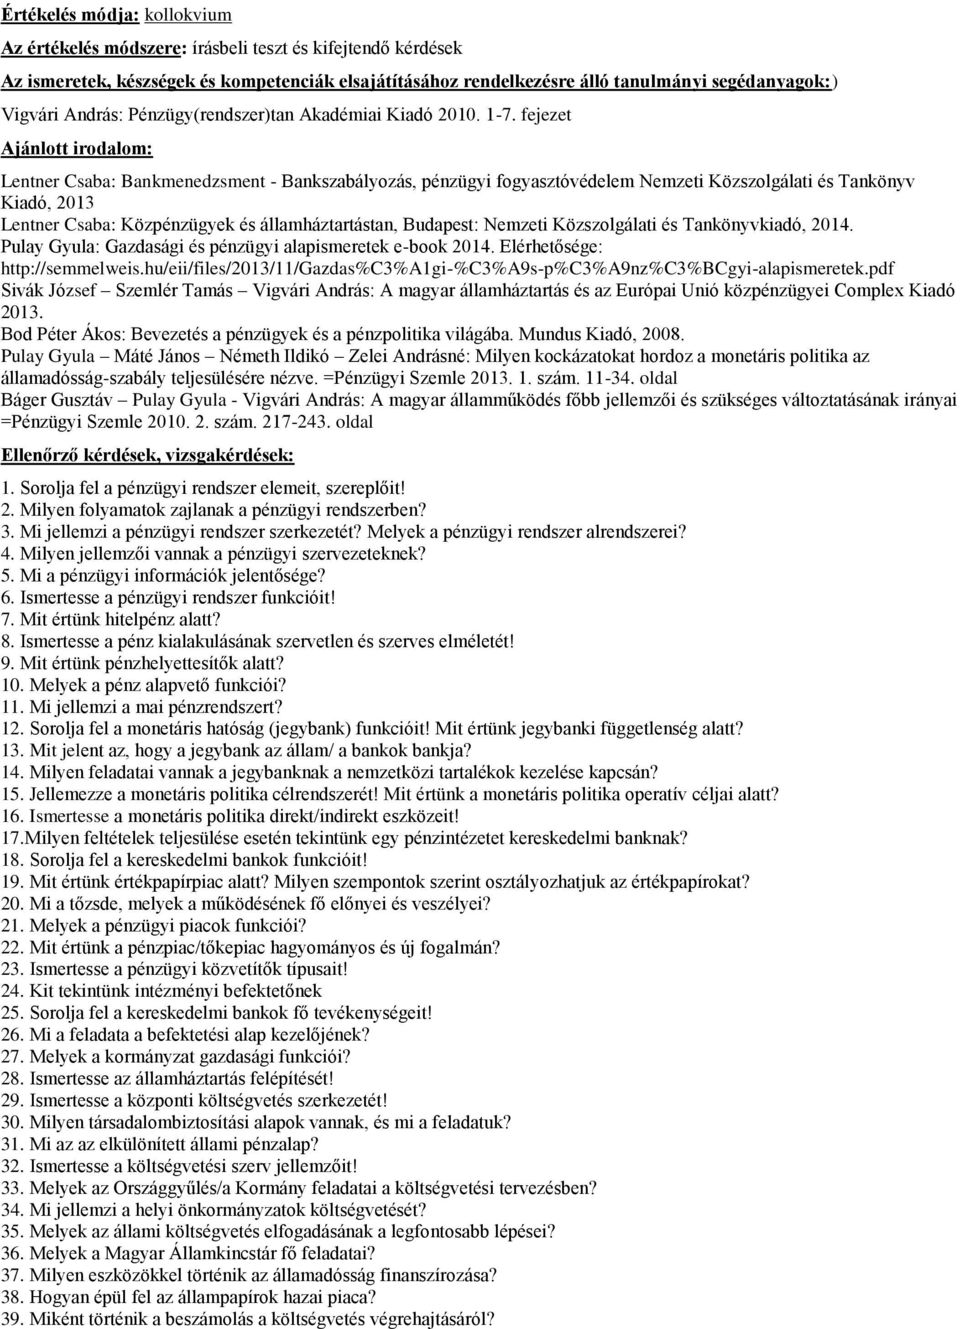 Közszolgálati és Tankönyvkiadó, 2014. Pulay Gyula: Gazdasági és pénzügyi alapismeretek e-book 2014. Elérhetősége: http://semmelweis.